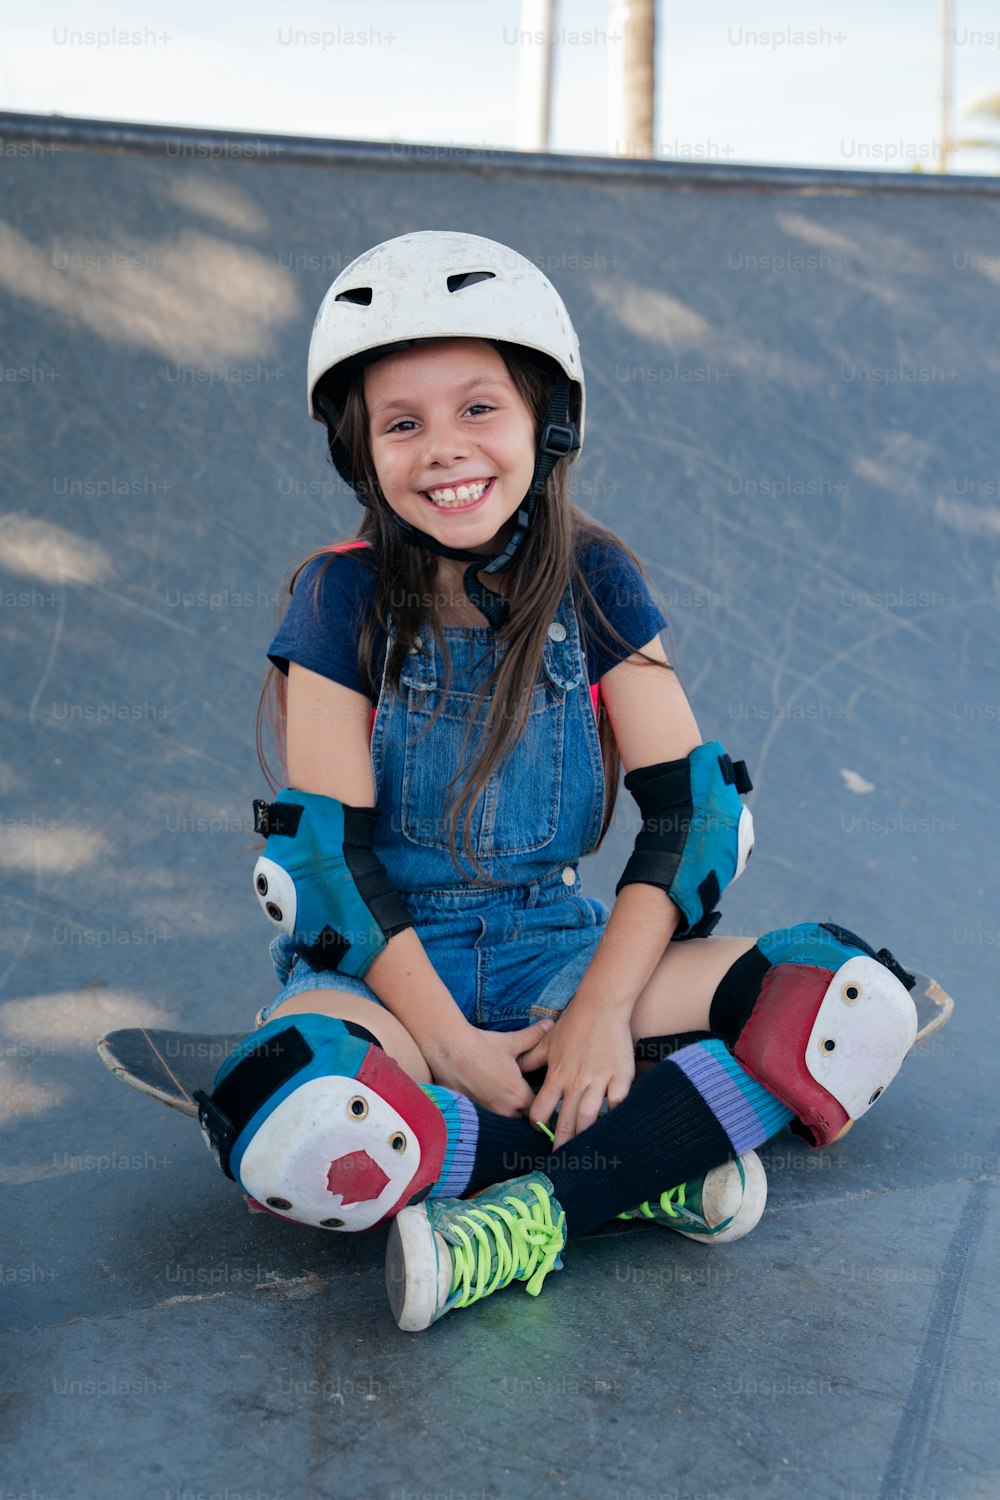 uma jovem sentada em um skate em uma pista de skate